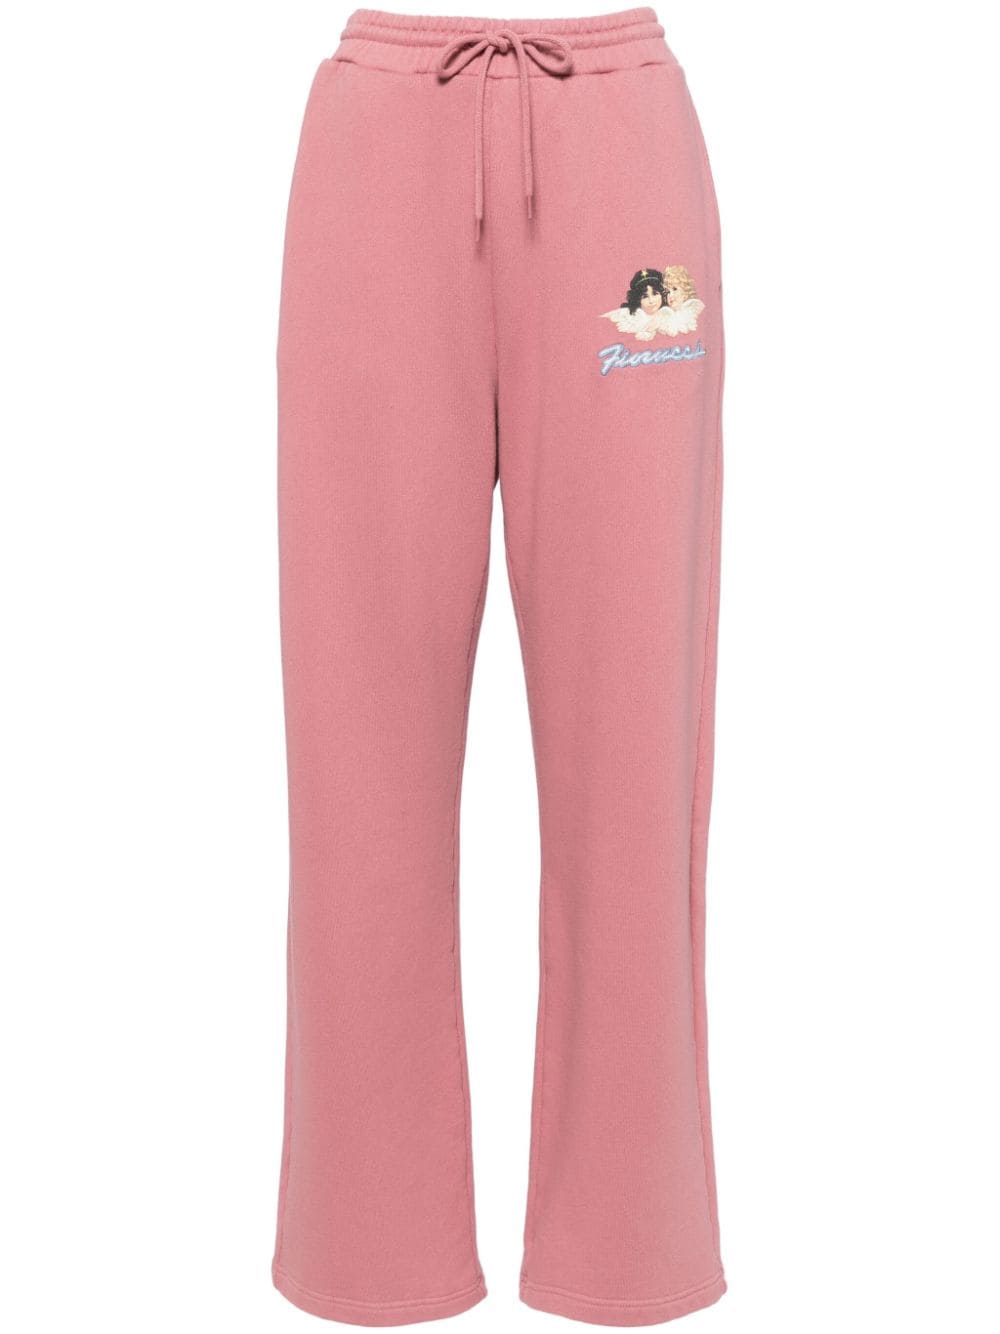 Fiorucci organic cotton track pants - Pink von Fiorucci